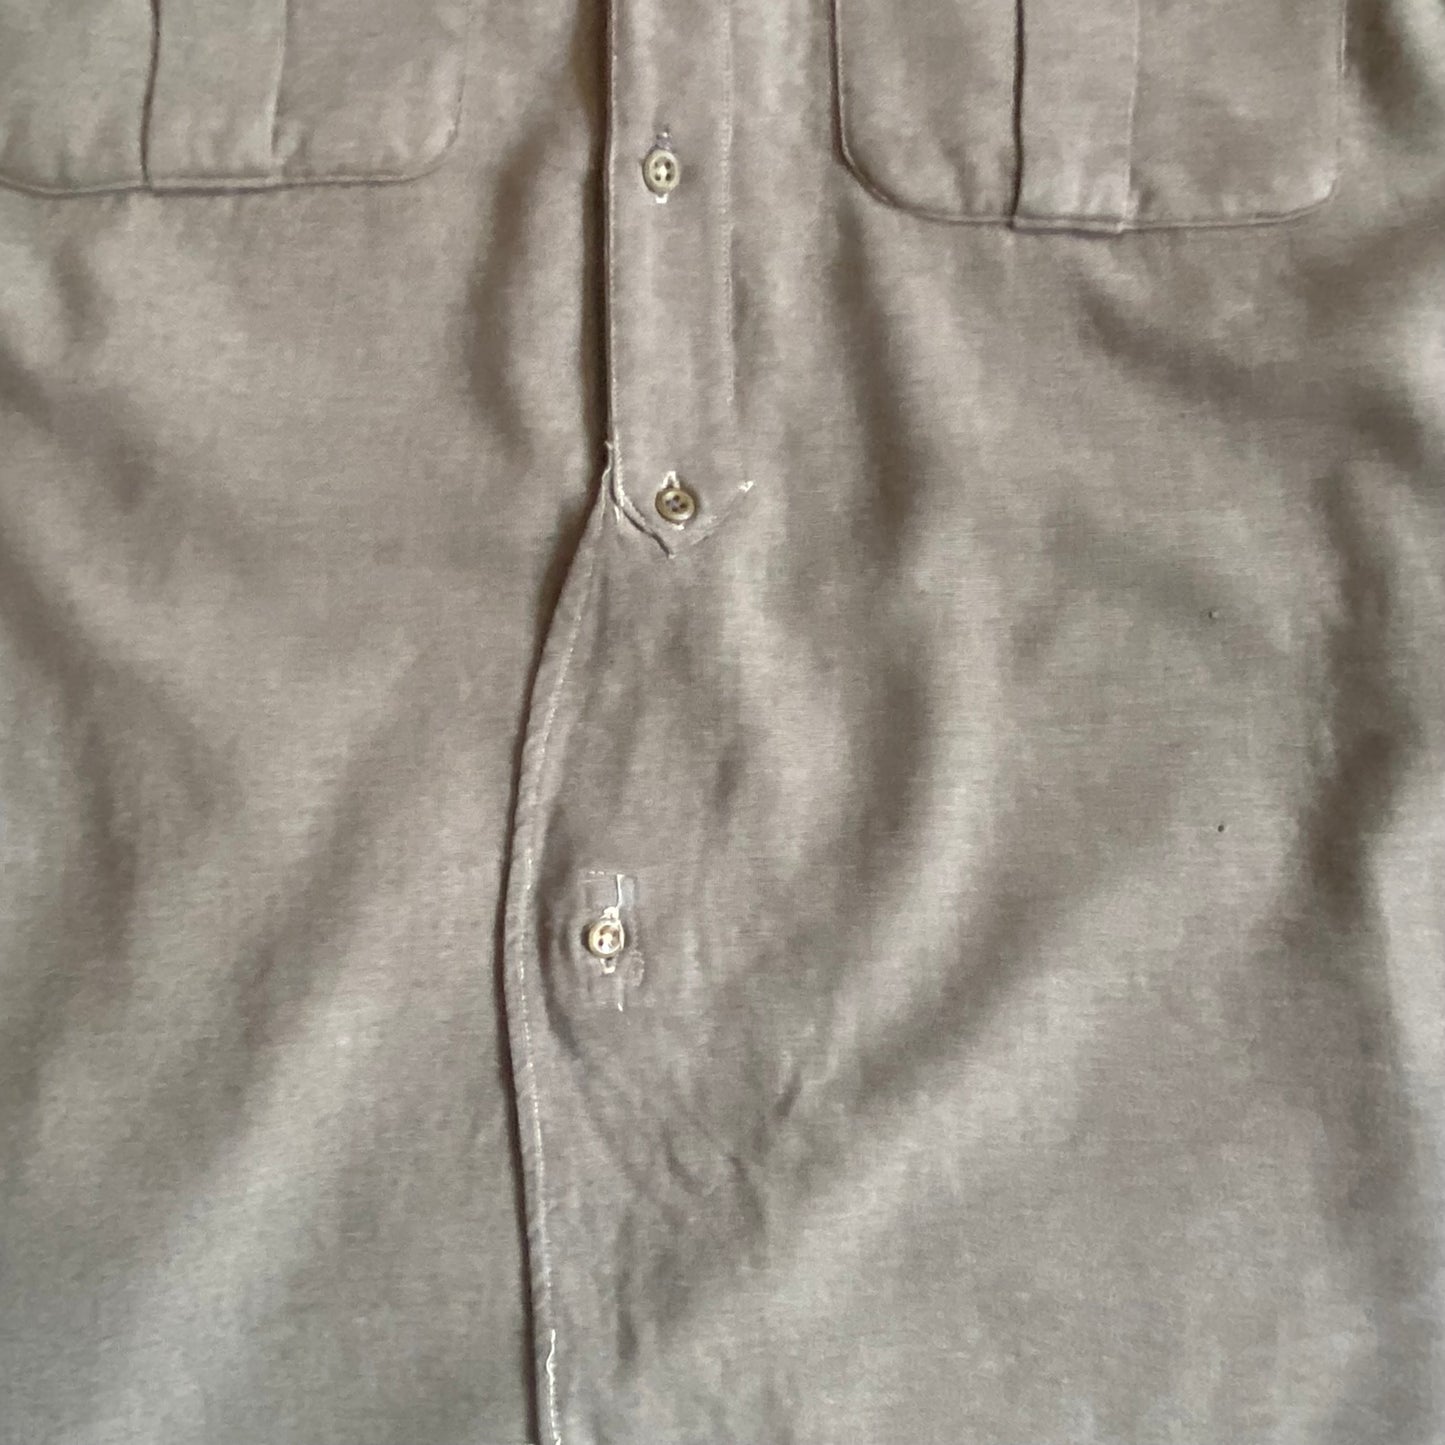 1954 dated British Army jungle shirt, Mau Mau rebellion era, size large